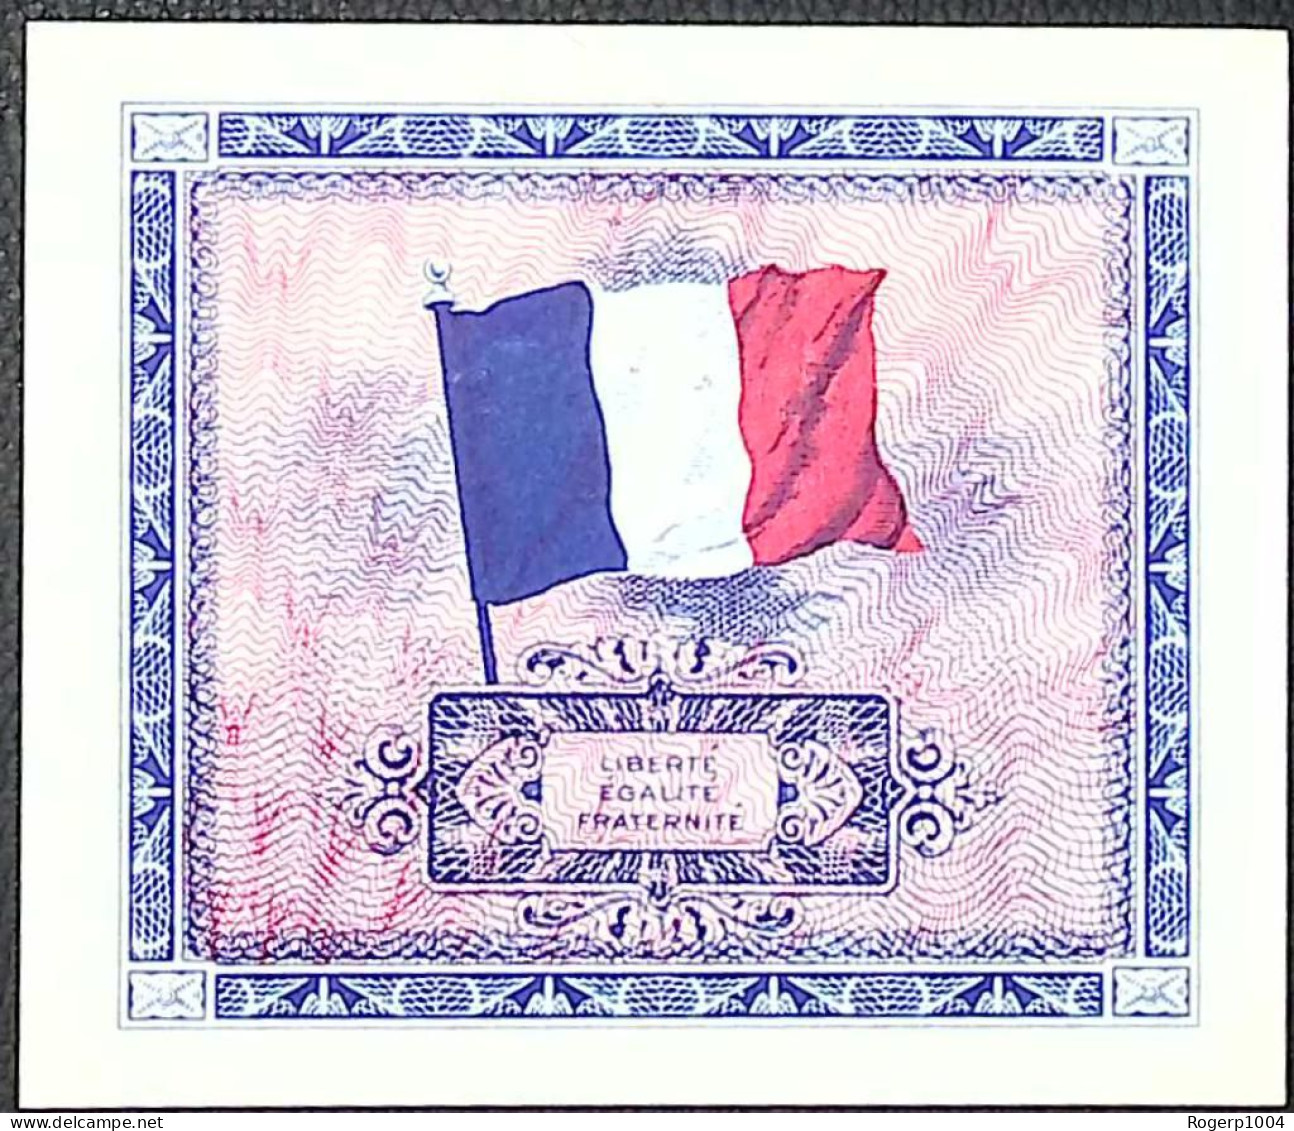 FRANCE * Billets Du Trésor * 5 Francs Drapeau * 1944 * Sans Série * Etat/Grade NEUF/UNC - 1944 Flag/France